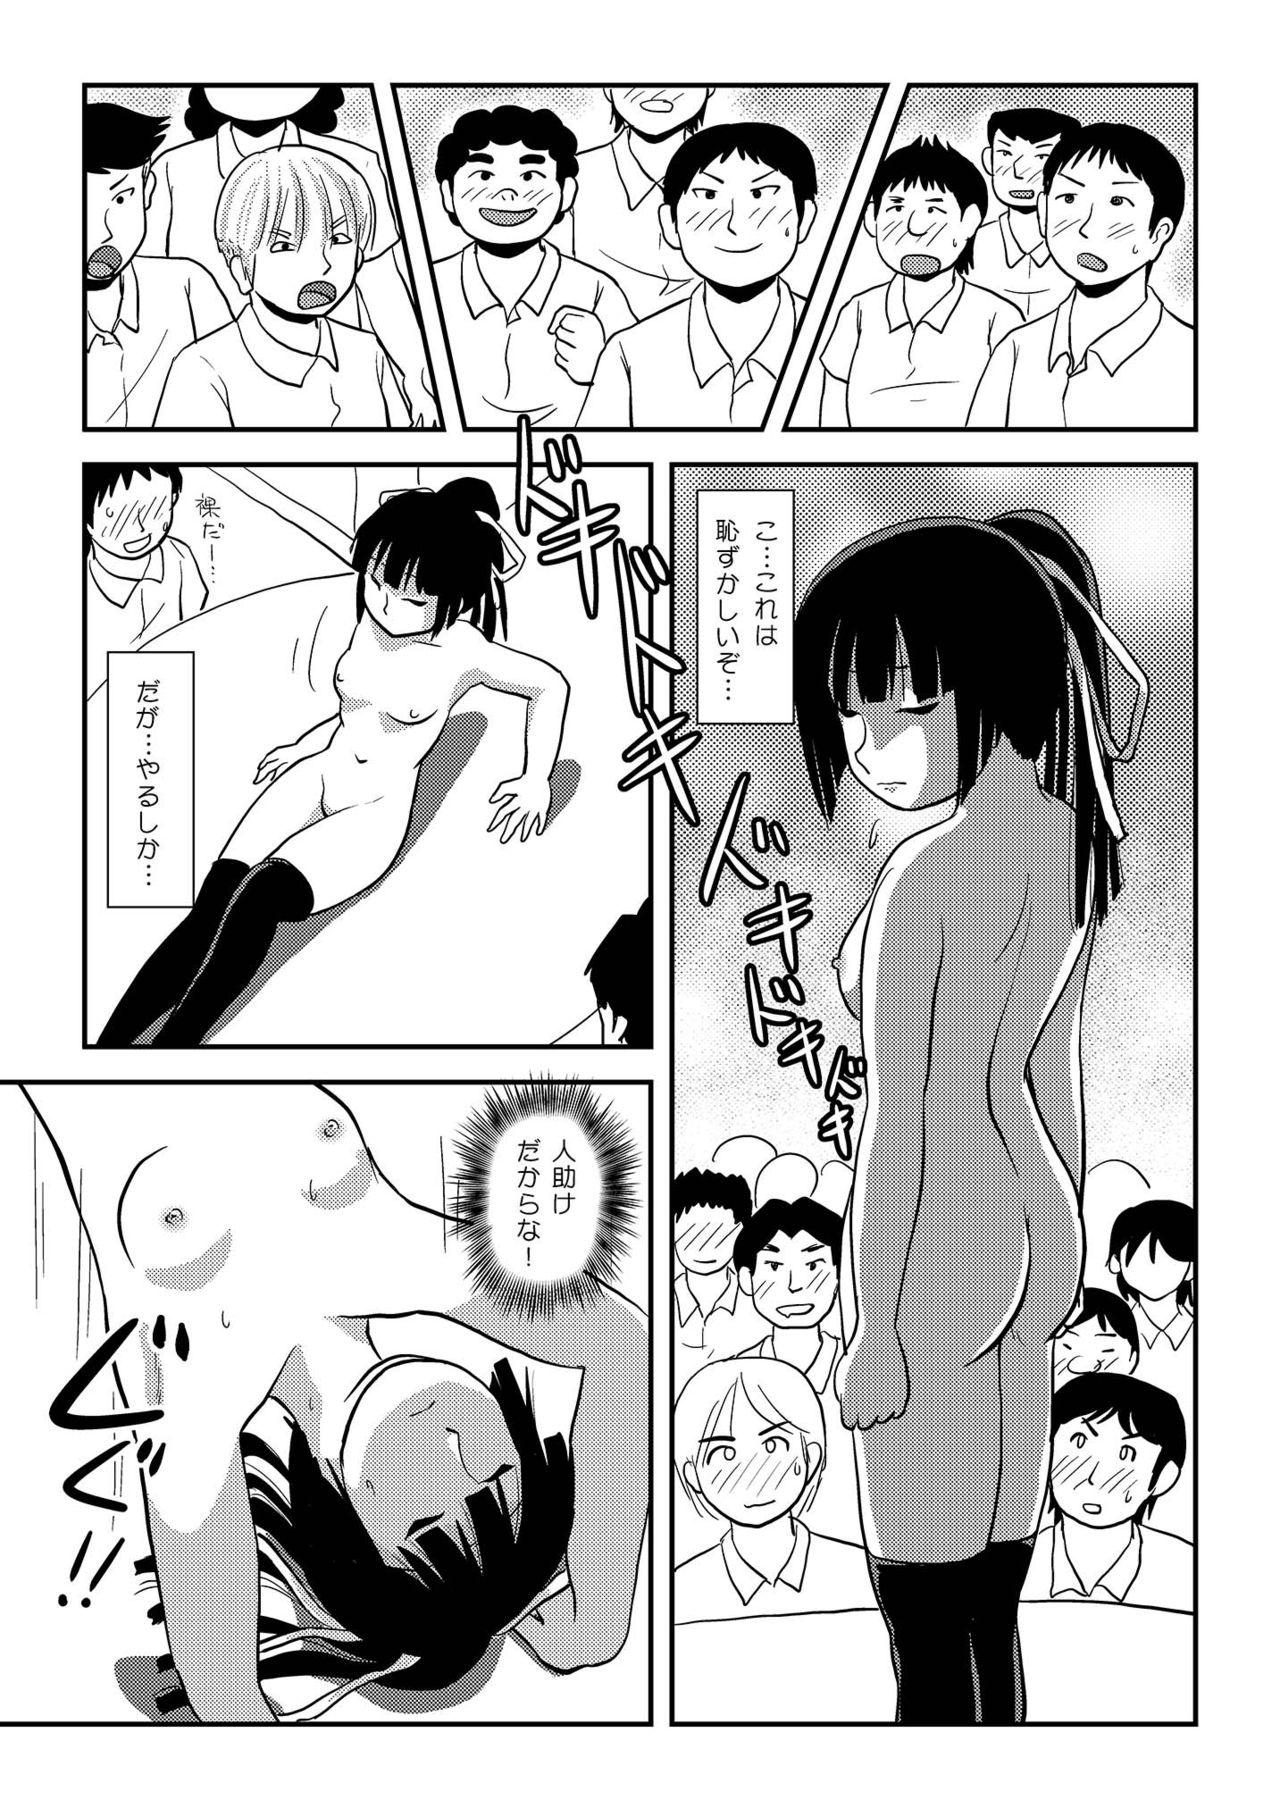 Abuse Sakura Kotaka no Roshutsubiyori 7 - Original Trimmed - Page 11